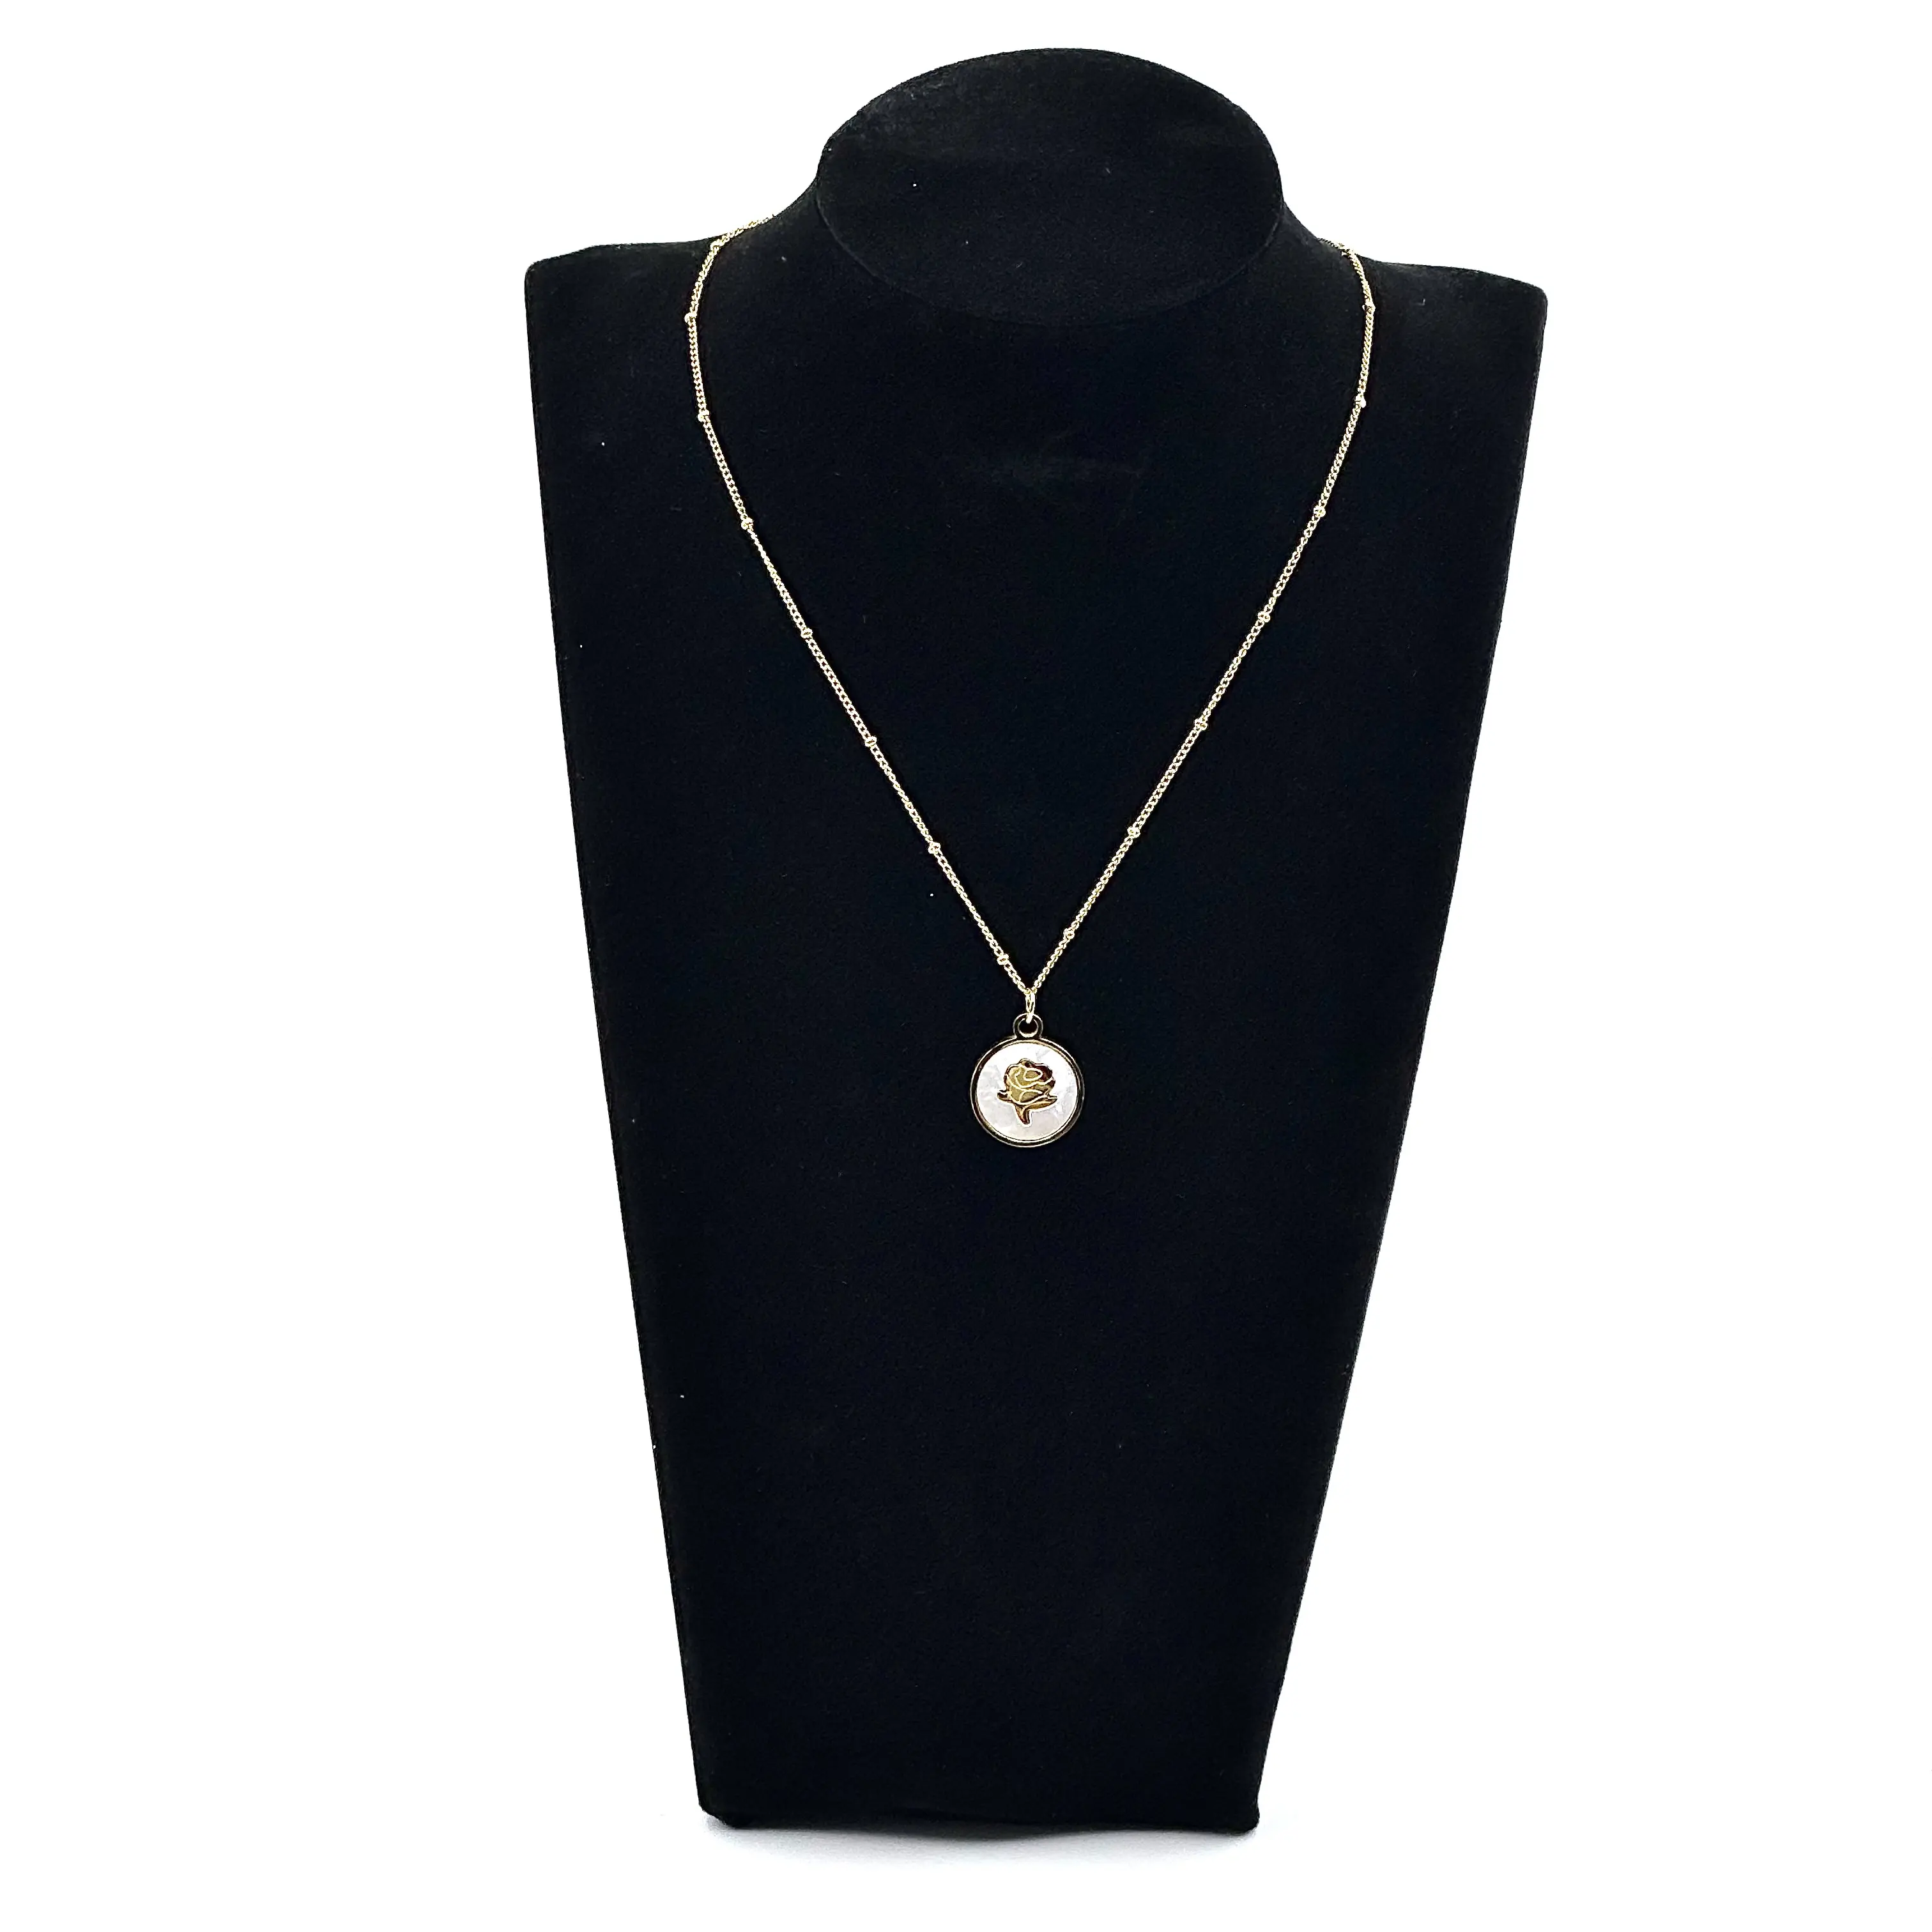 Alloy Jewelry Round Charm Bar Halskette mit Metall anhänger Vertical Design Blank Gravur erhältlich